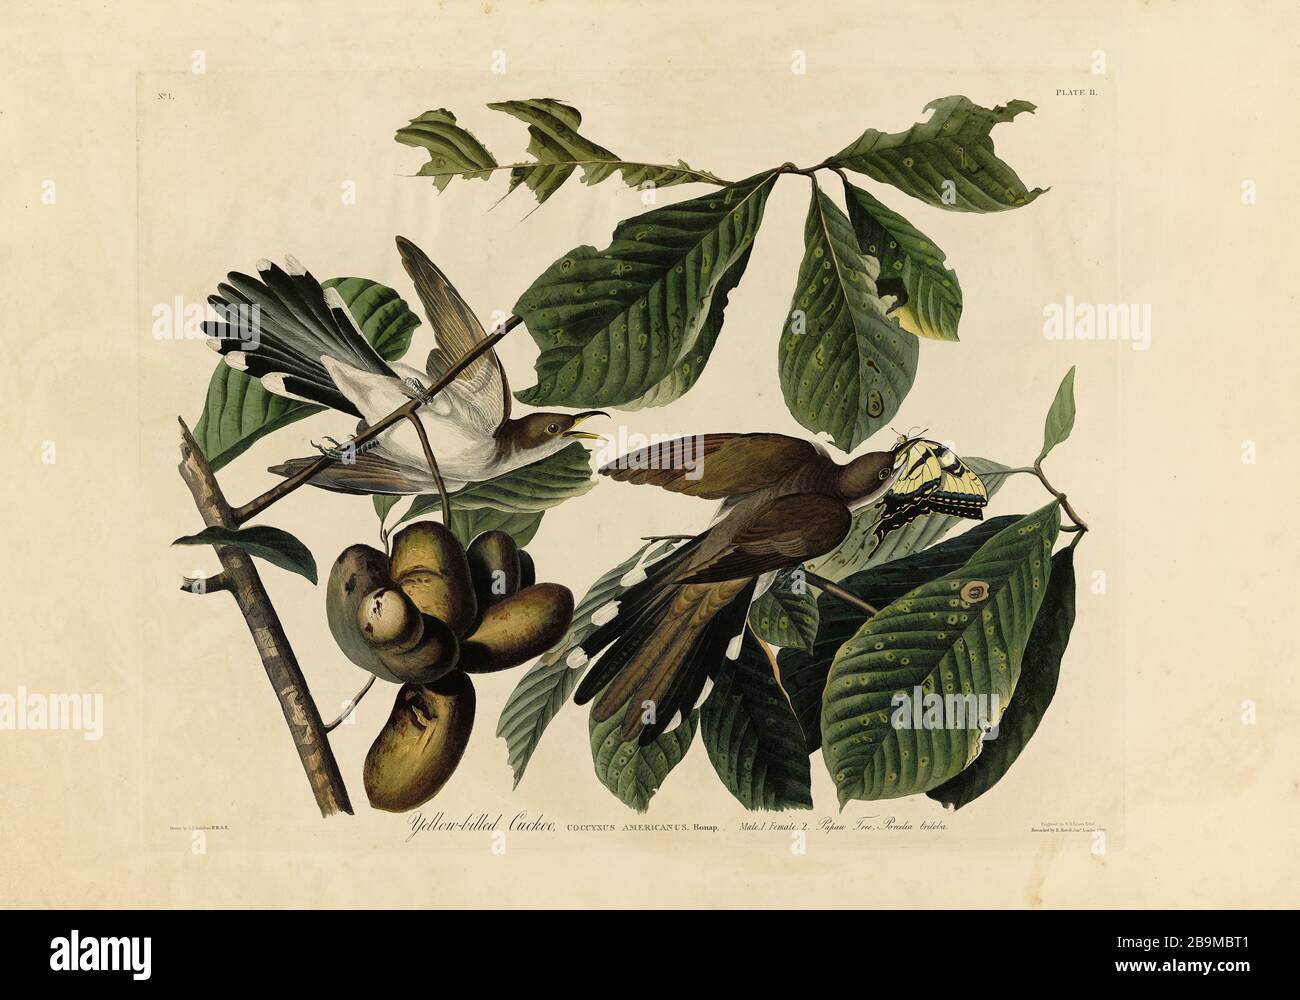 Plate 2 cucù giallo-fatturati da The Birds of America Folio (1827–1839) di John James Audubon - altissima risoluzione e qualità immagine modificata Foto Stock